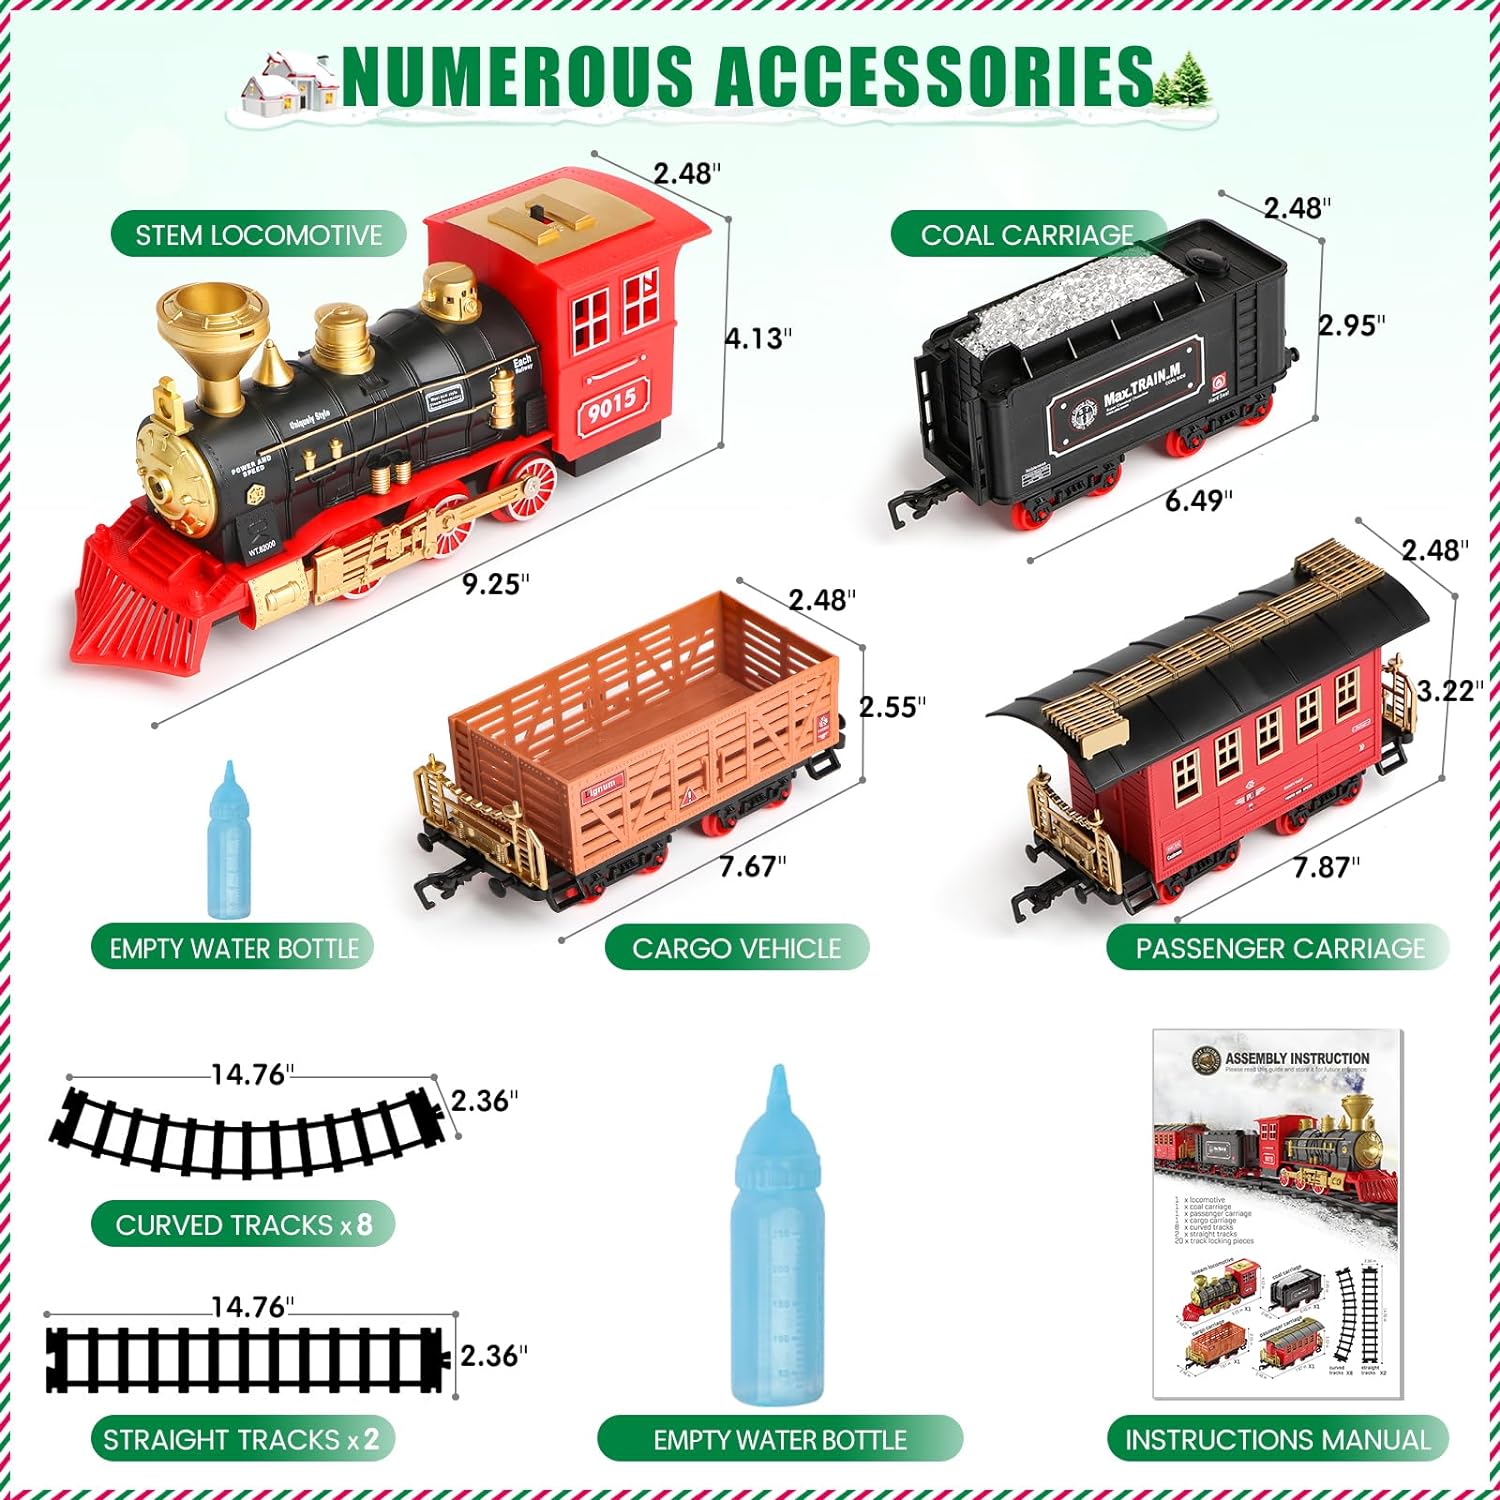 Train Toys for Boys Girls w/Smokes, Lights & Sound, Tracks, Toy Train w/Steam Locomotive Engine